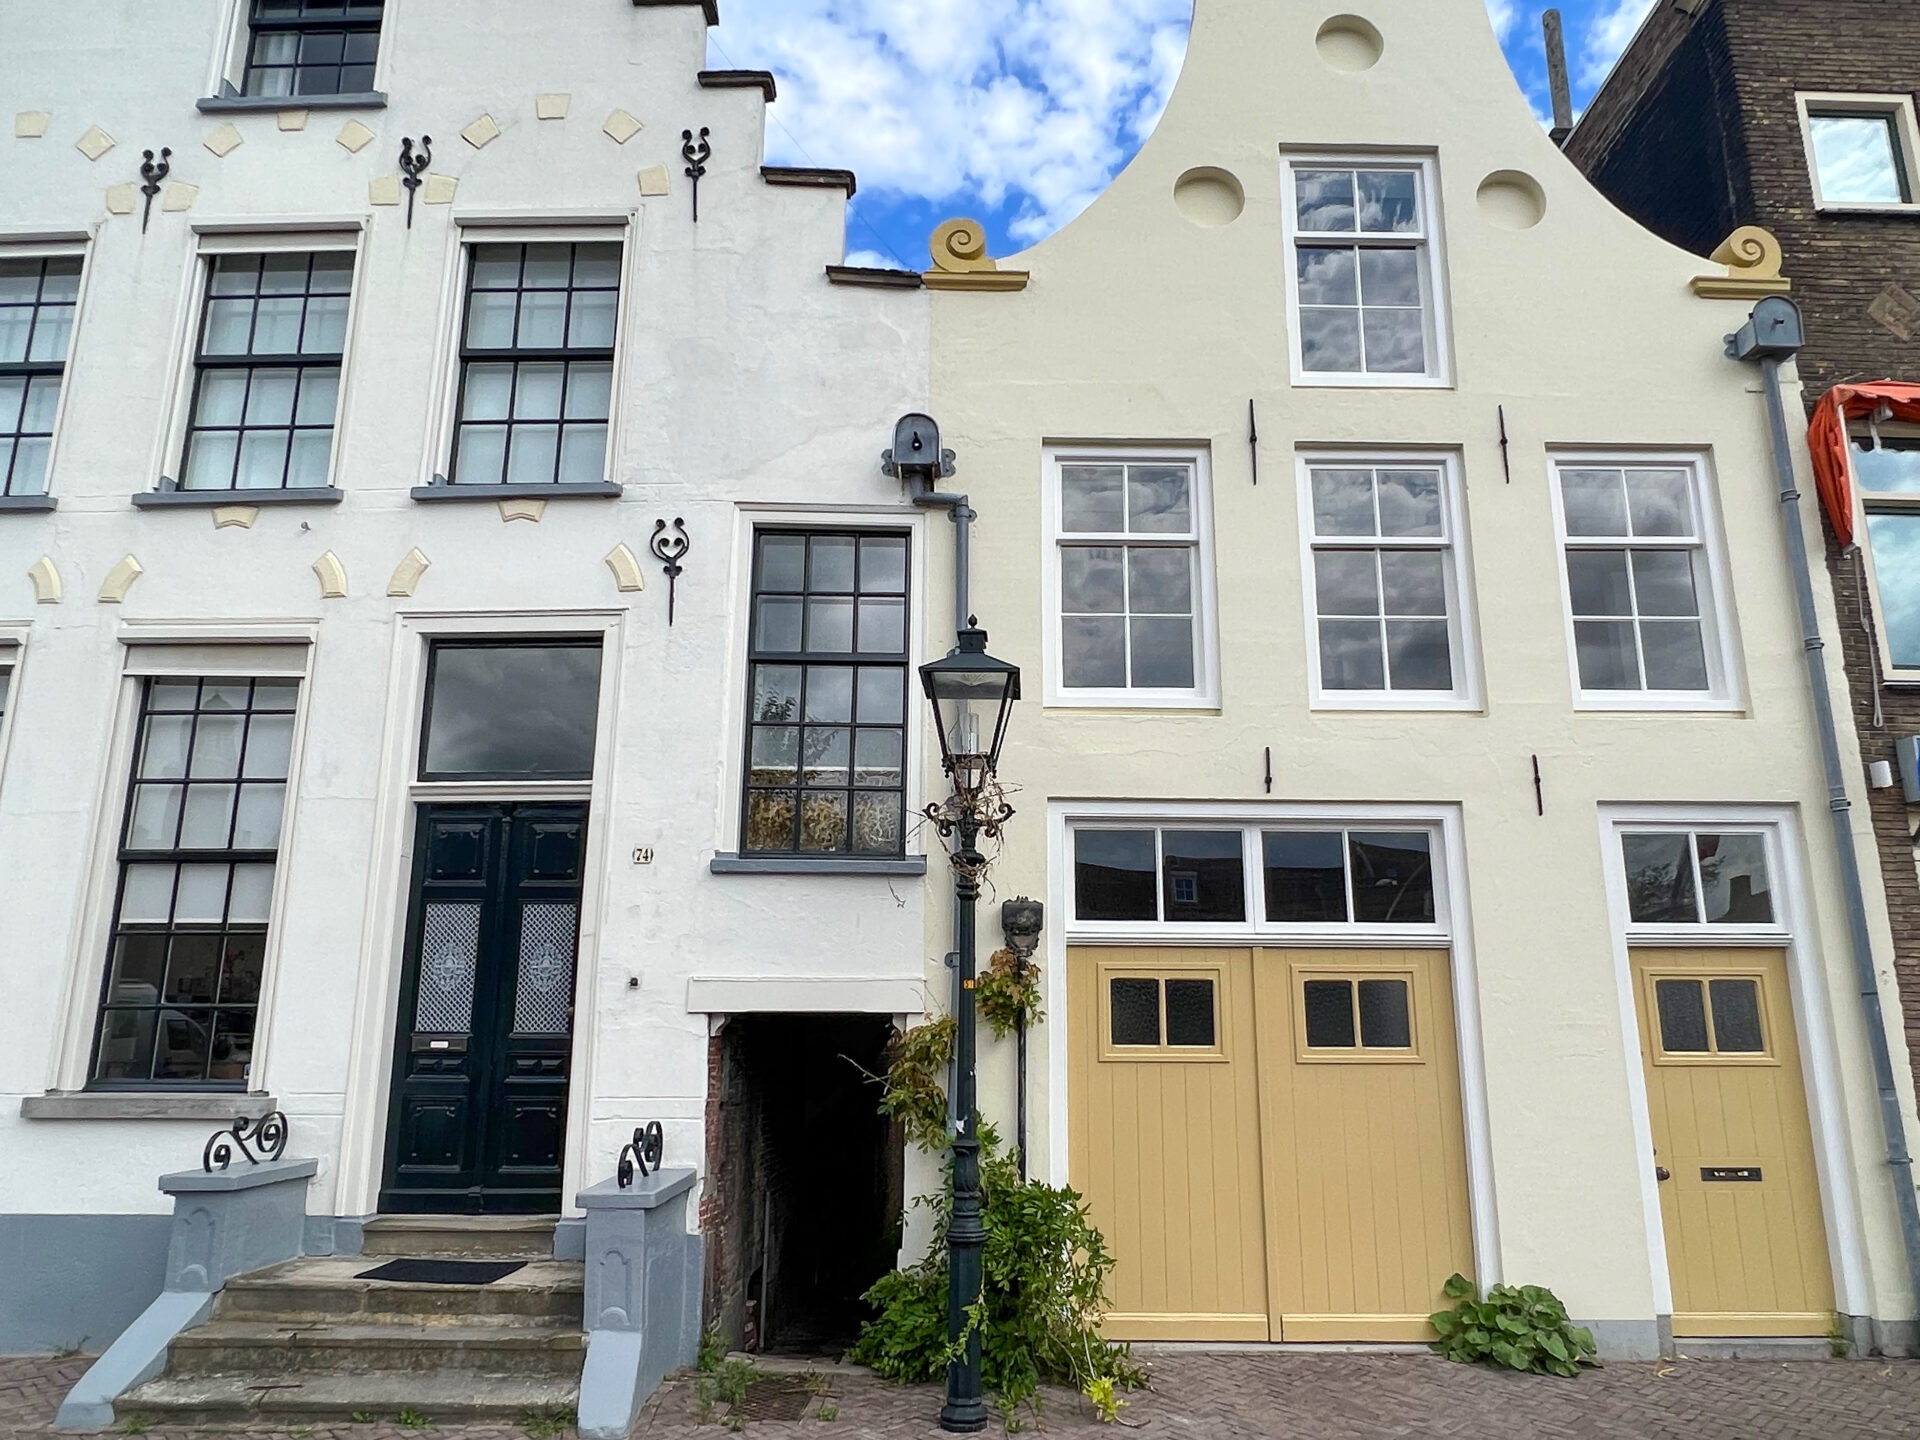 Malerische Giebelhäuser in der Altstadt von Zwolle